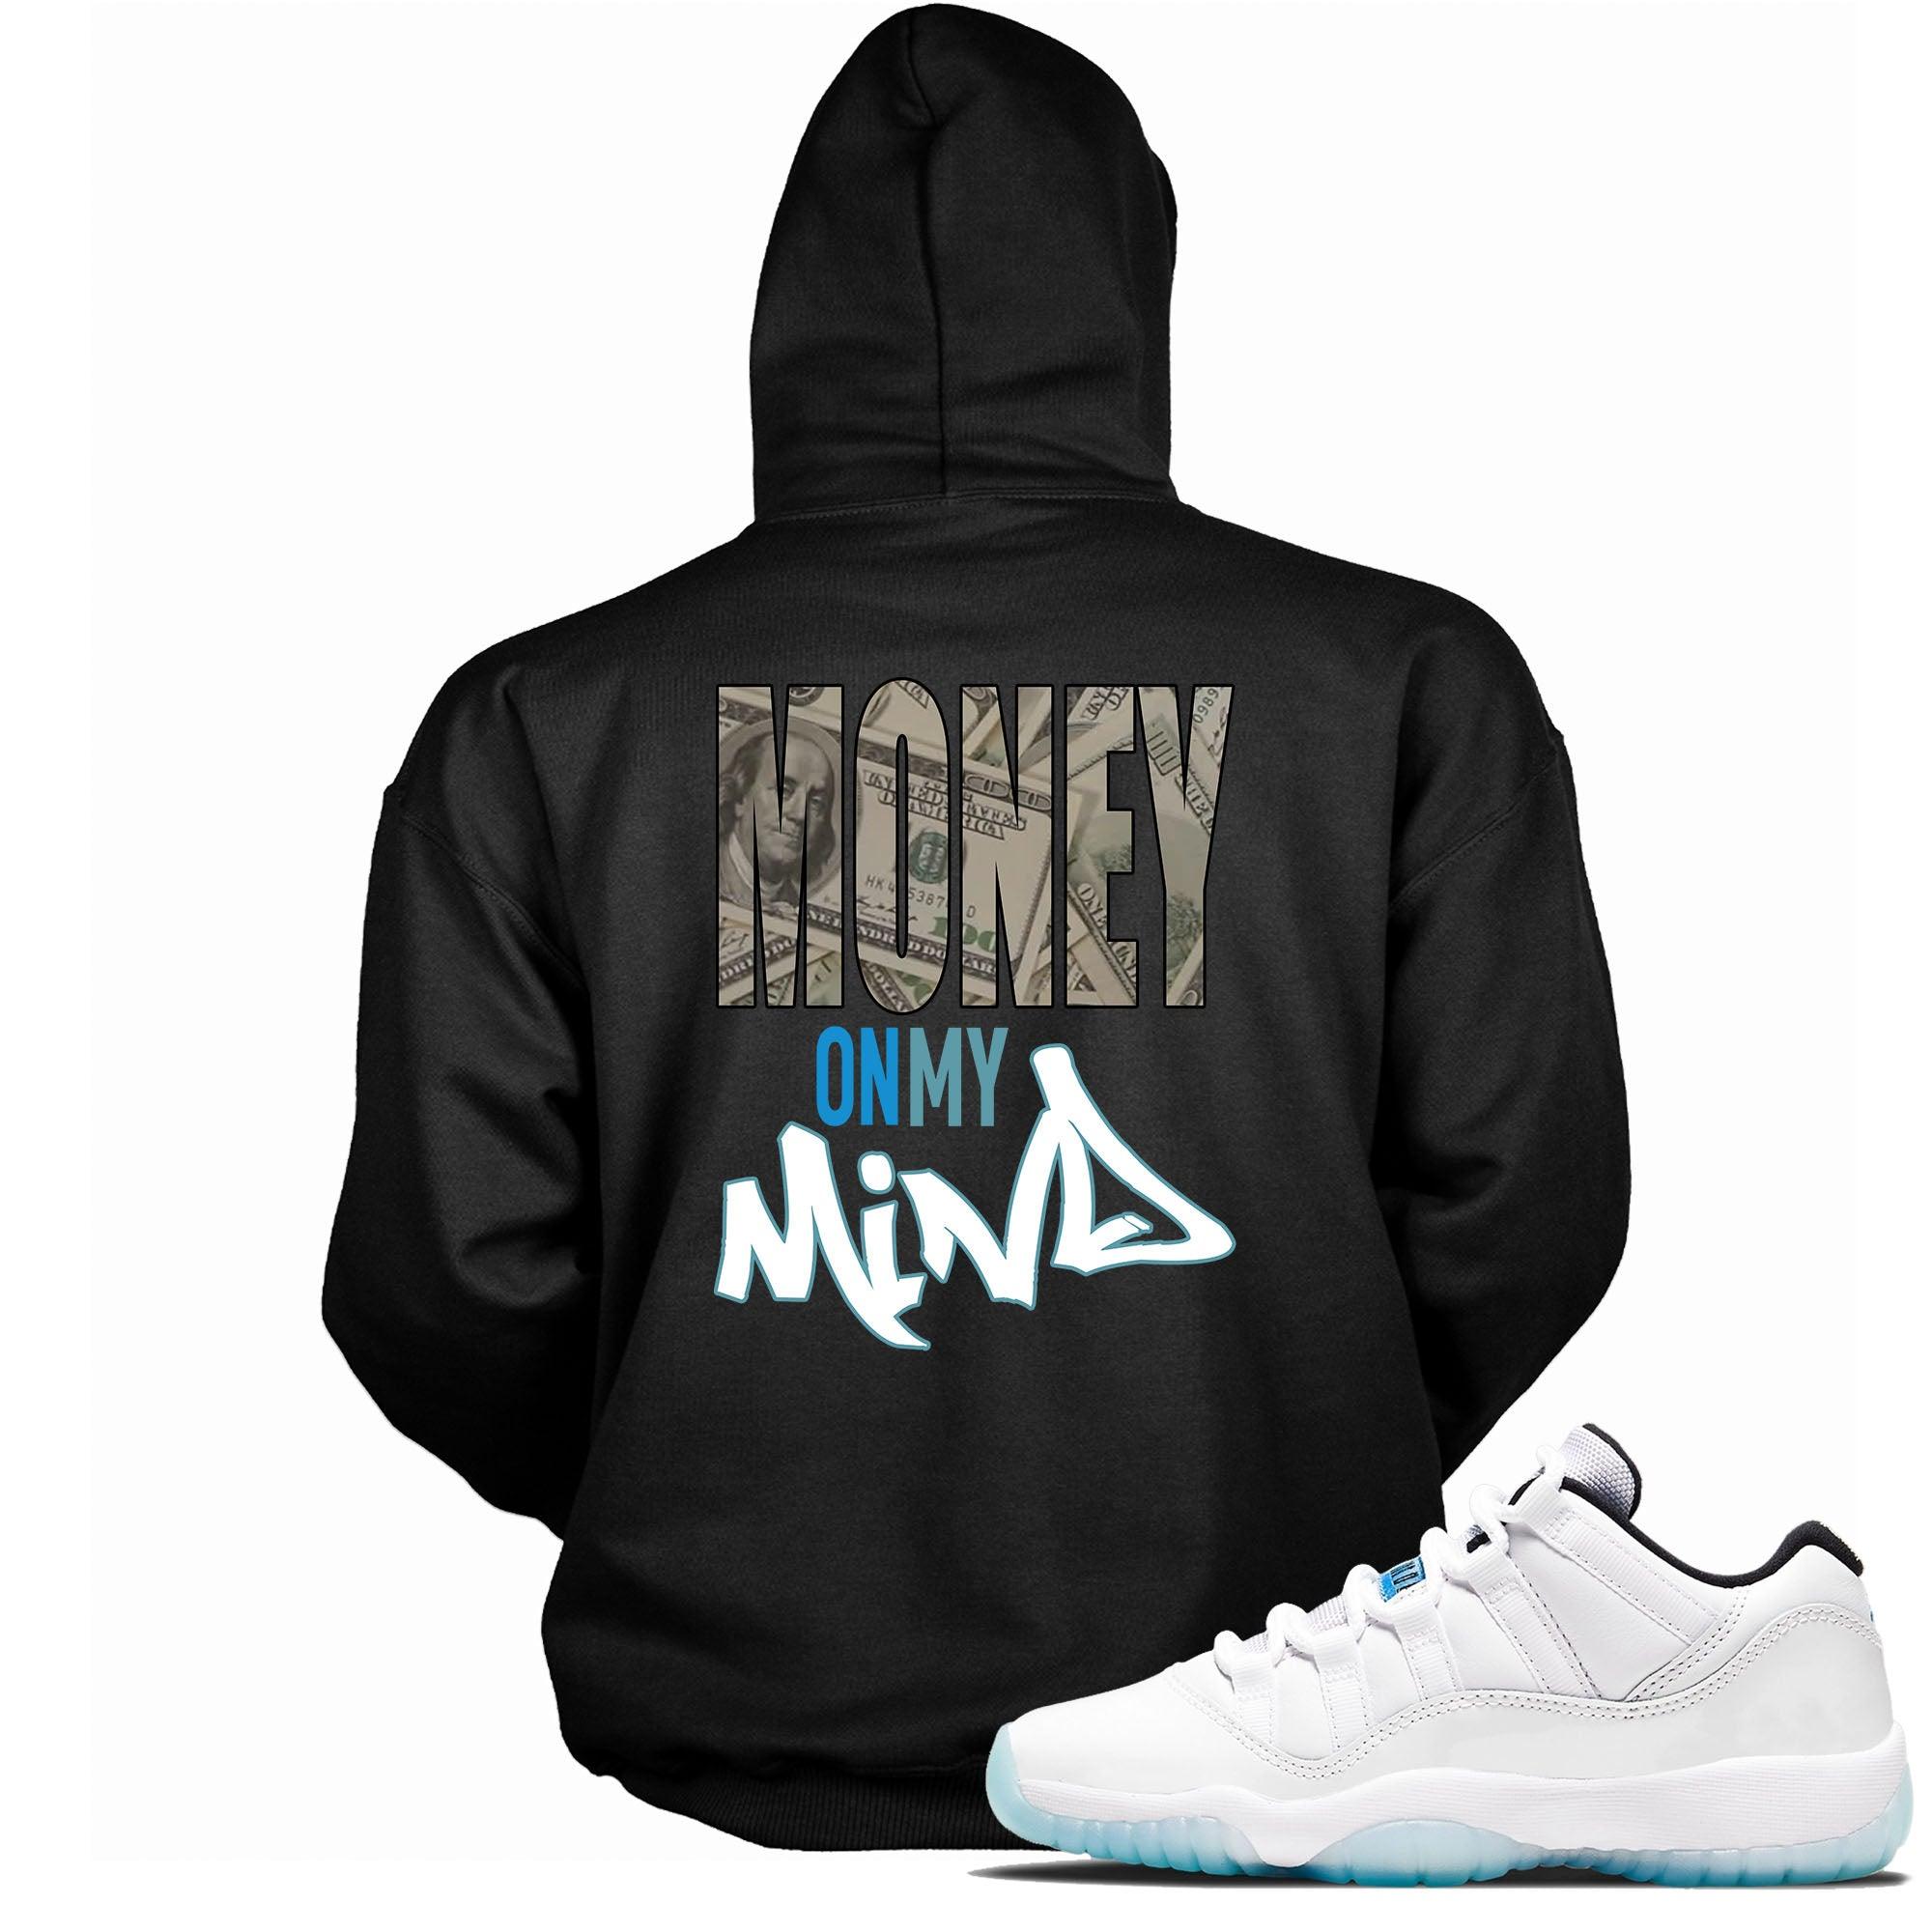 Money On My Mind Sneaker Sweatshirt AJ 11 Retro Low Legend Blue photo